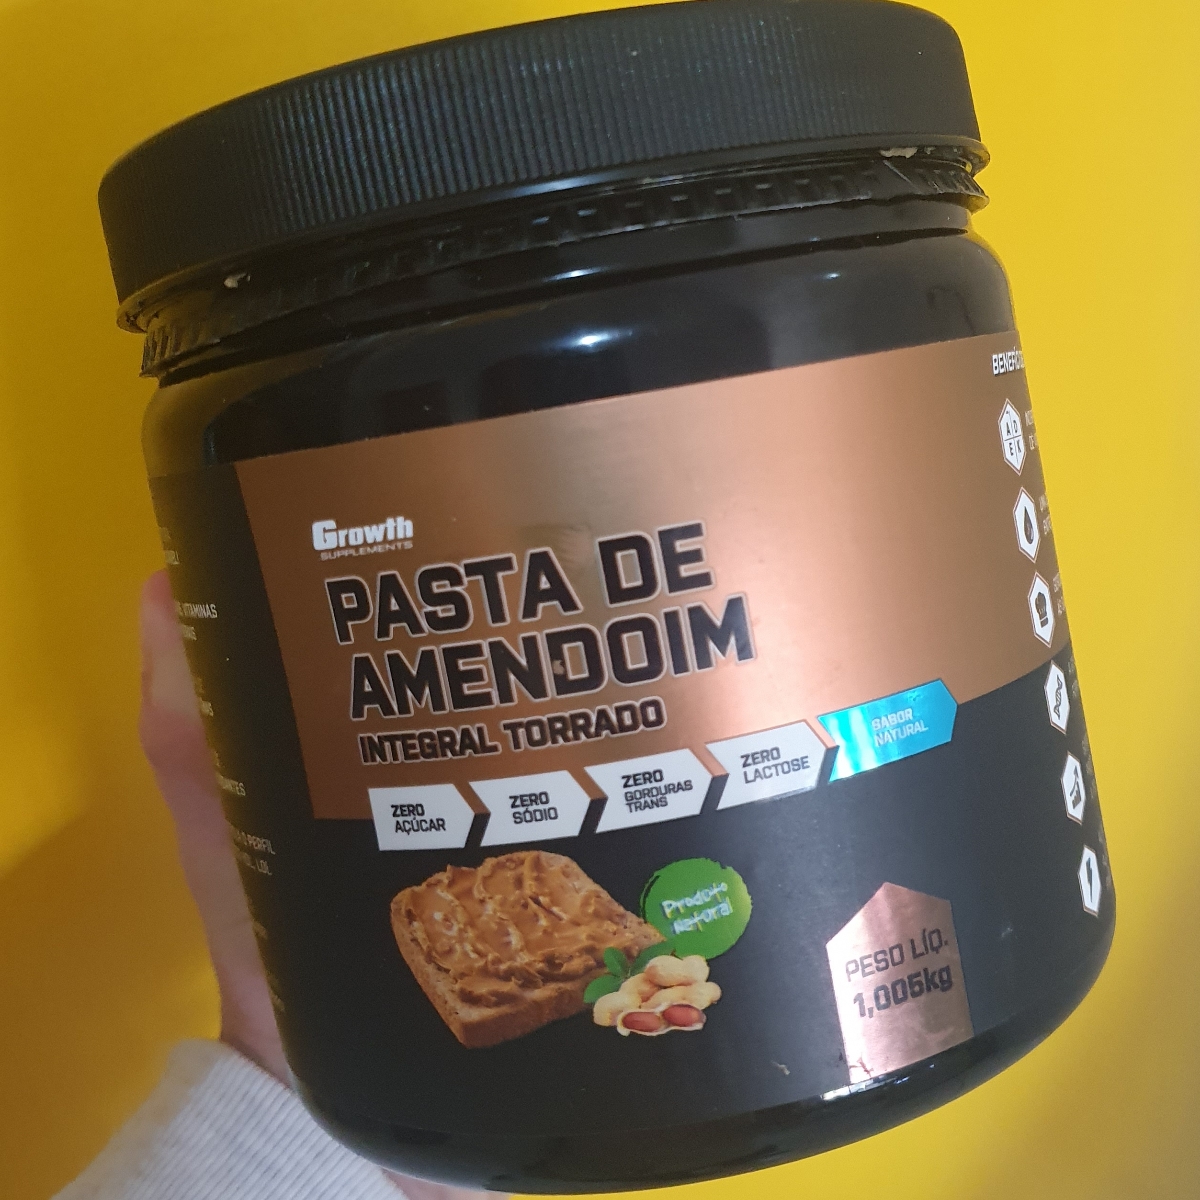 Growth Supplements Pasta De Amendoim Review